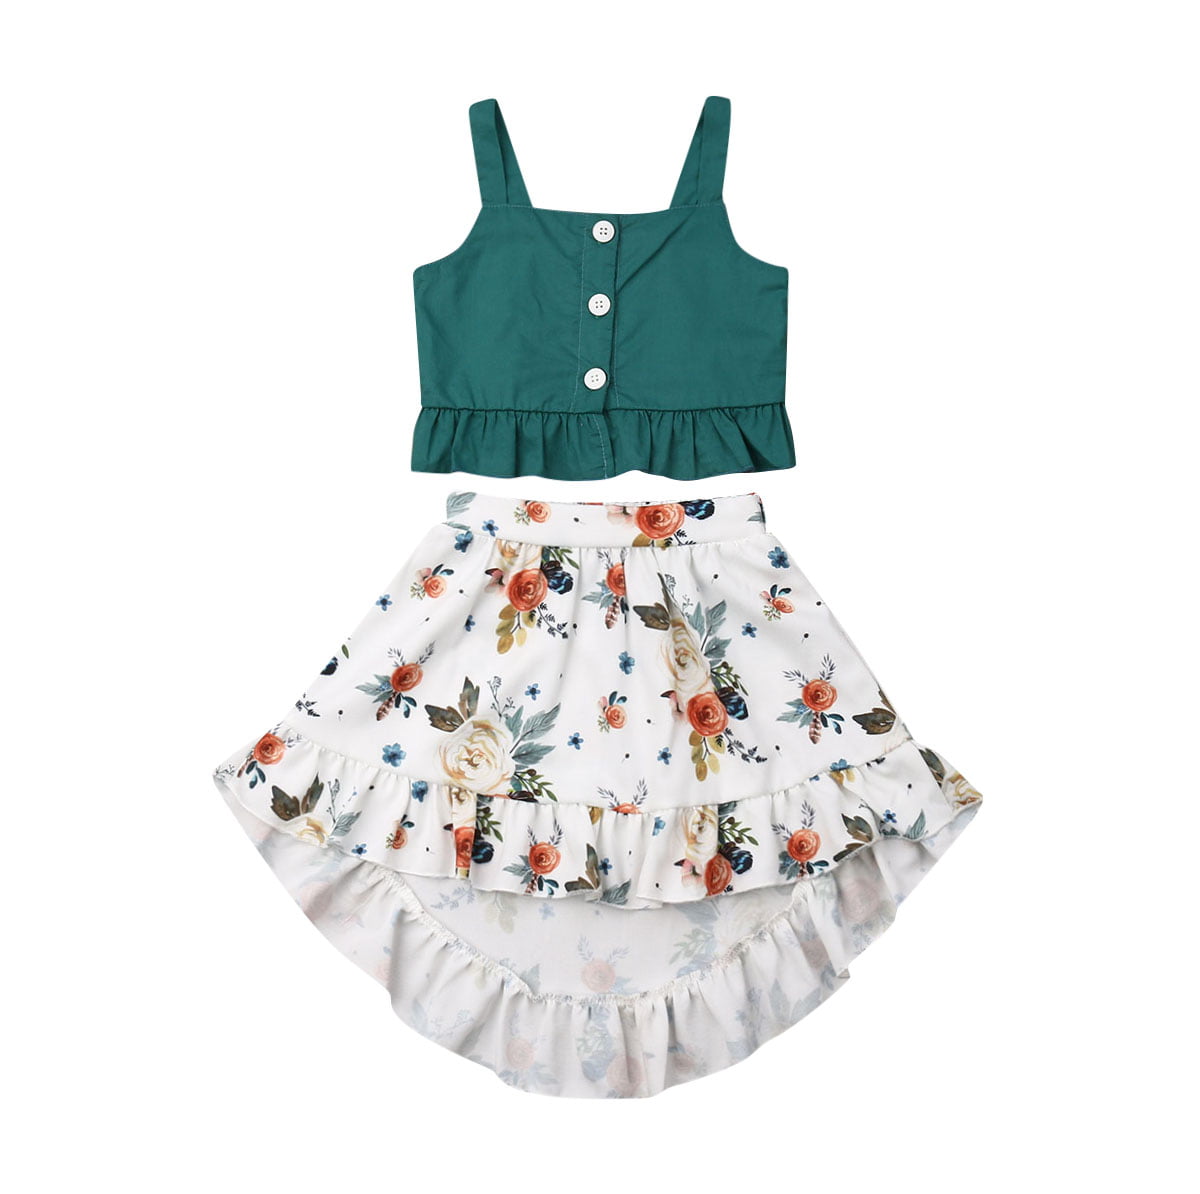 Baby Girls Sleeveless Shirt+Irregular Floral Skirt Set Summer Casual Clothes 